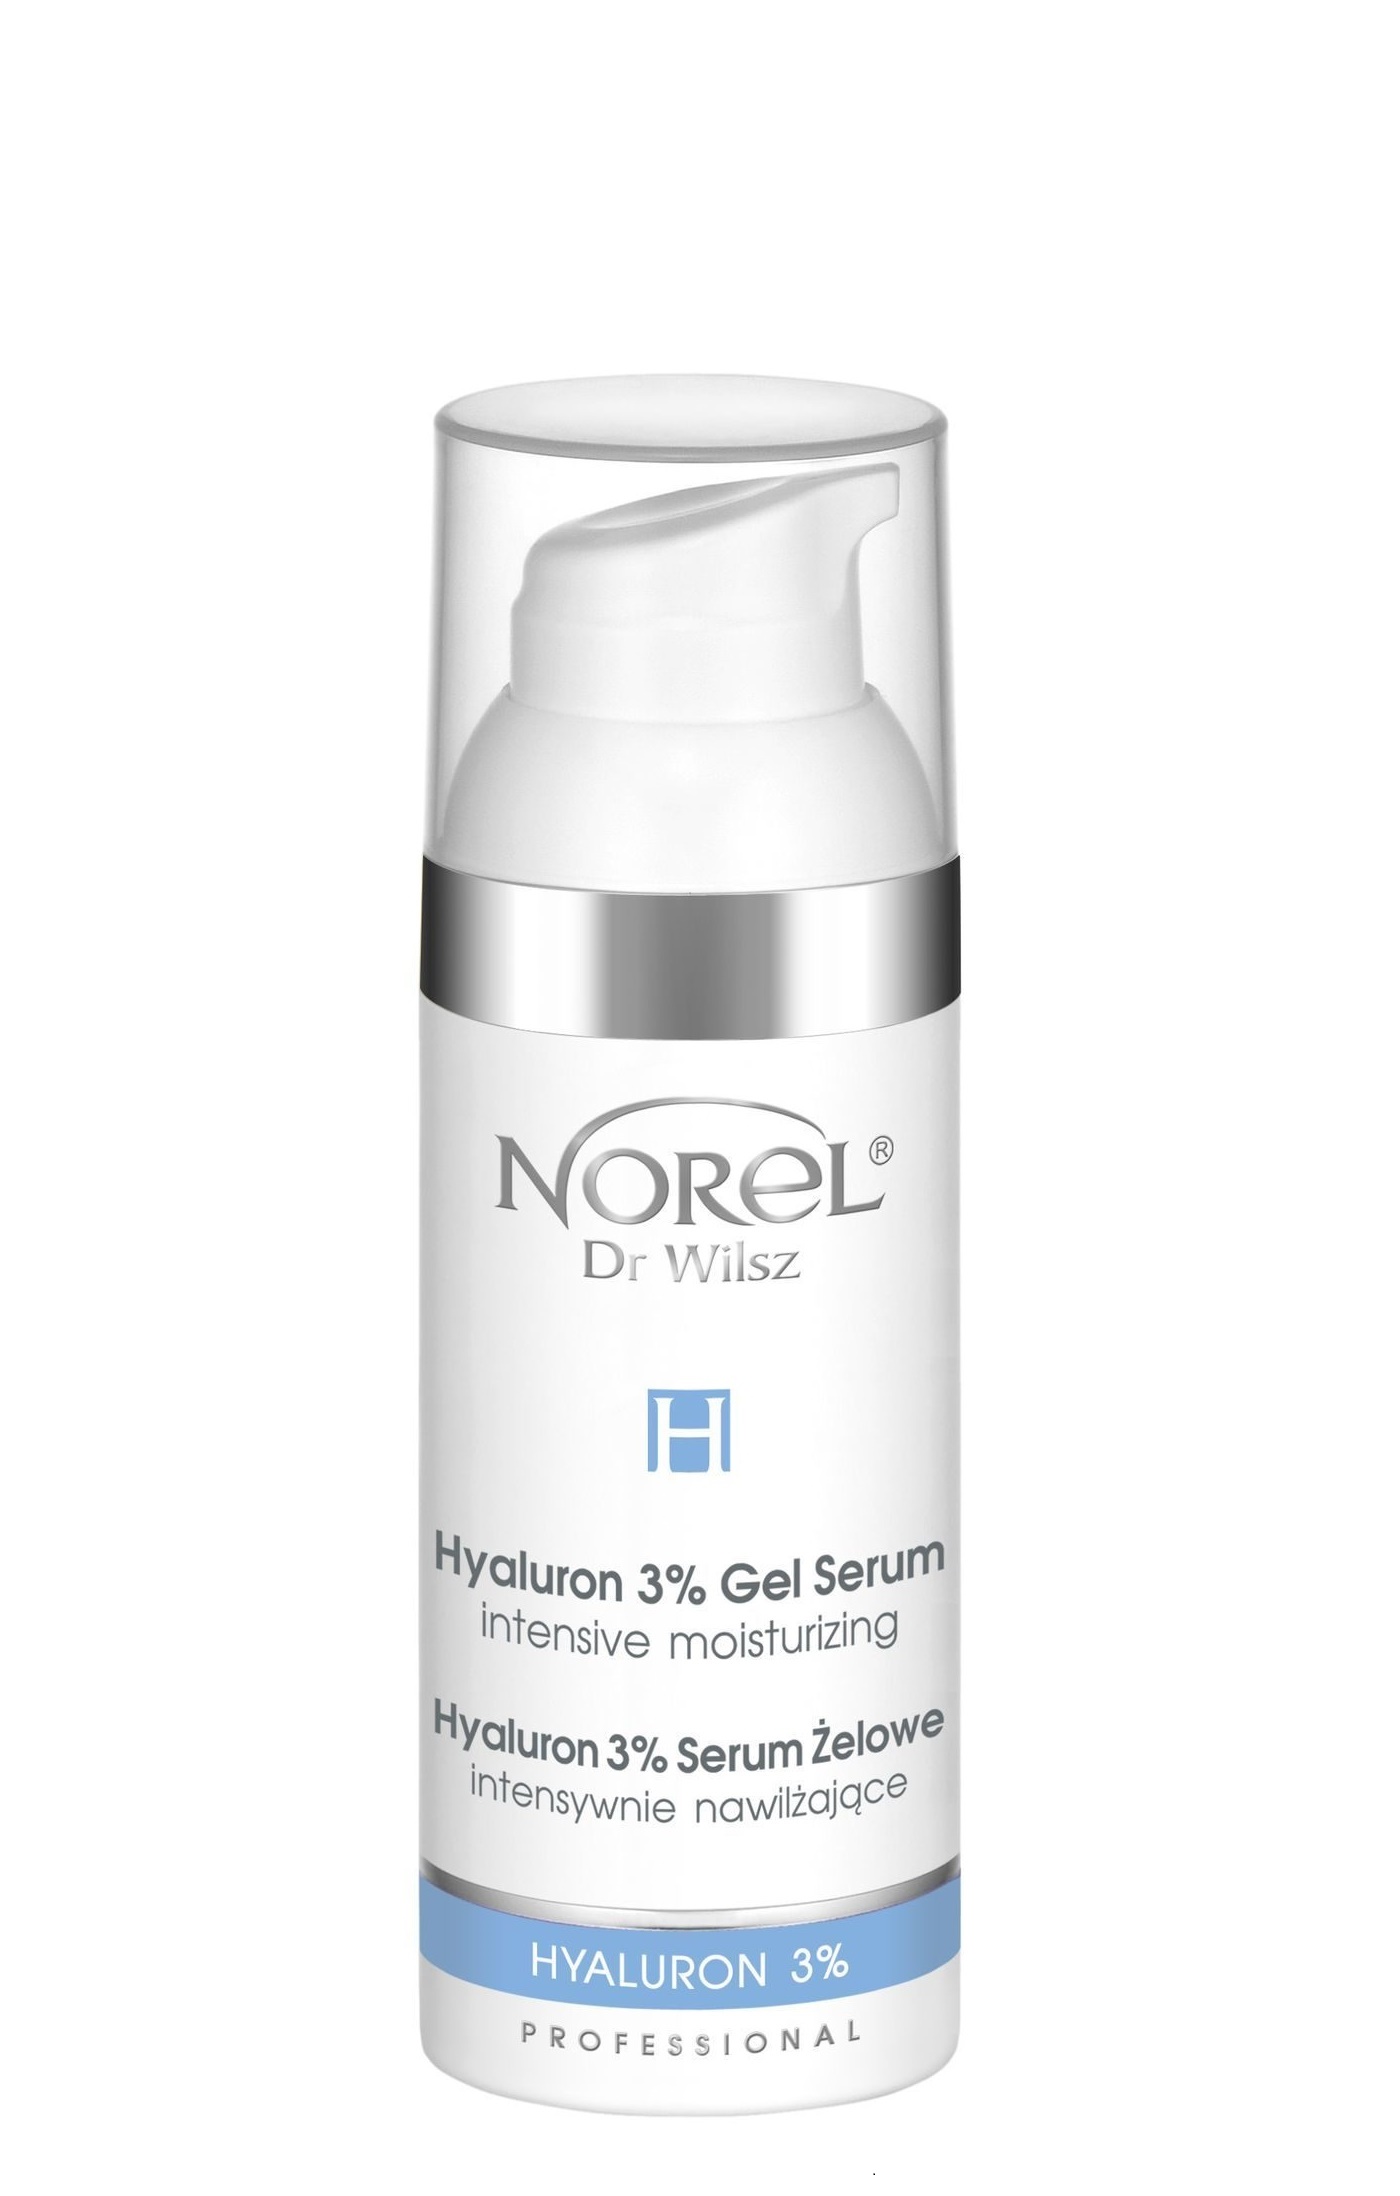 Norel Hyaluron 3% Gel Serum-Intensive Moisturizing. Norel Dr Wilsz очищающее молочко Hyaluron Plus. Сыворотка увлажняющая (50 мл). Concentrate интенсивная сыворотка гиалуроновая.